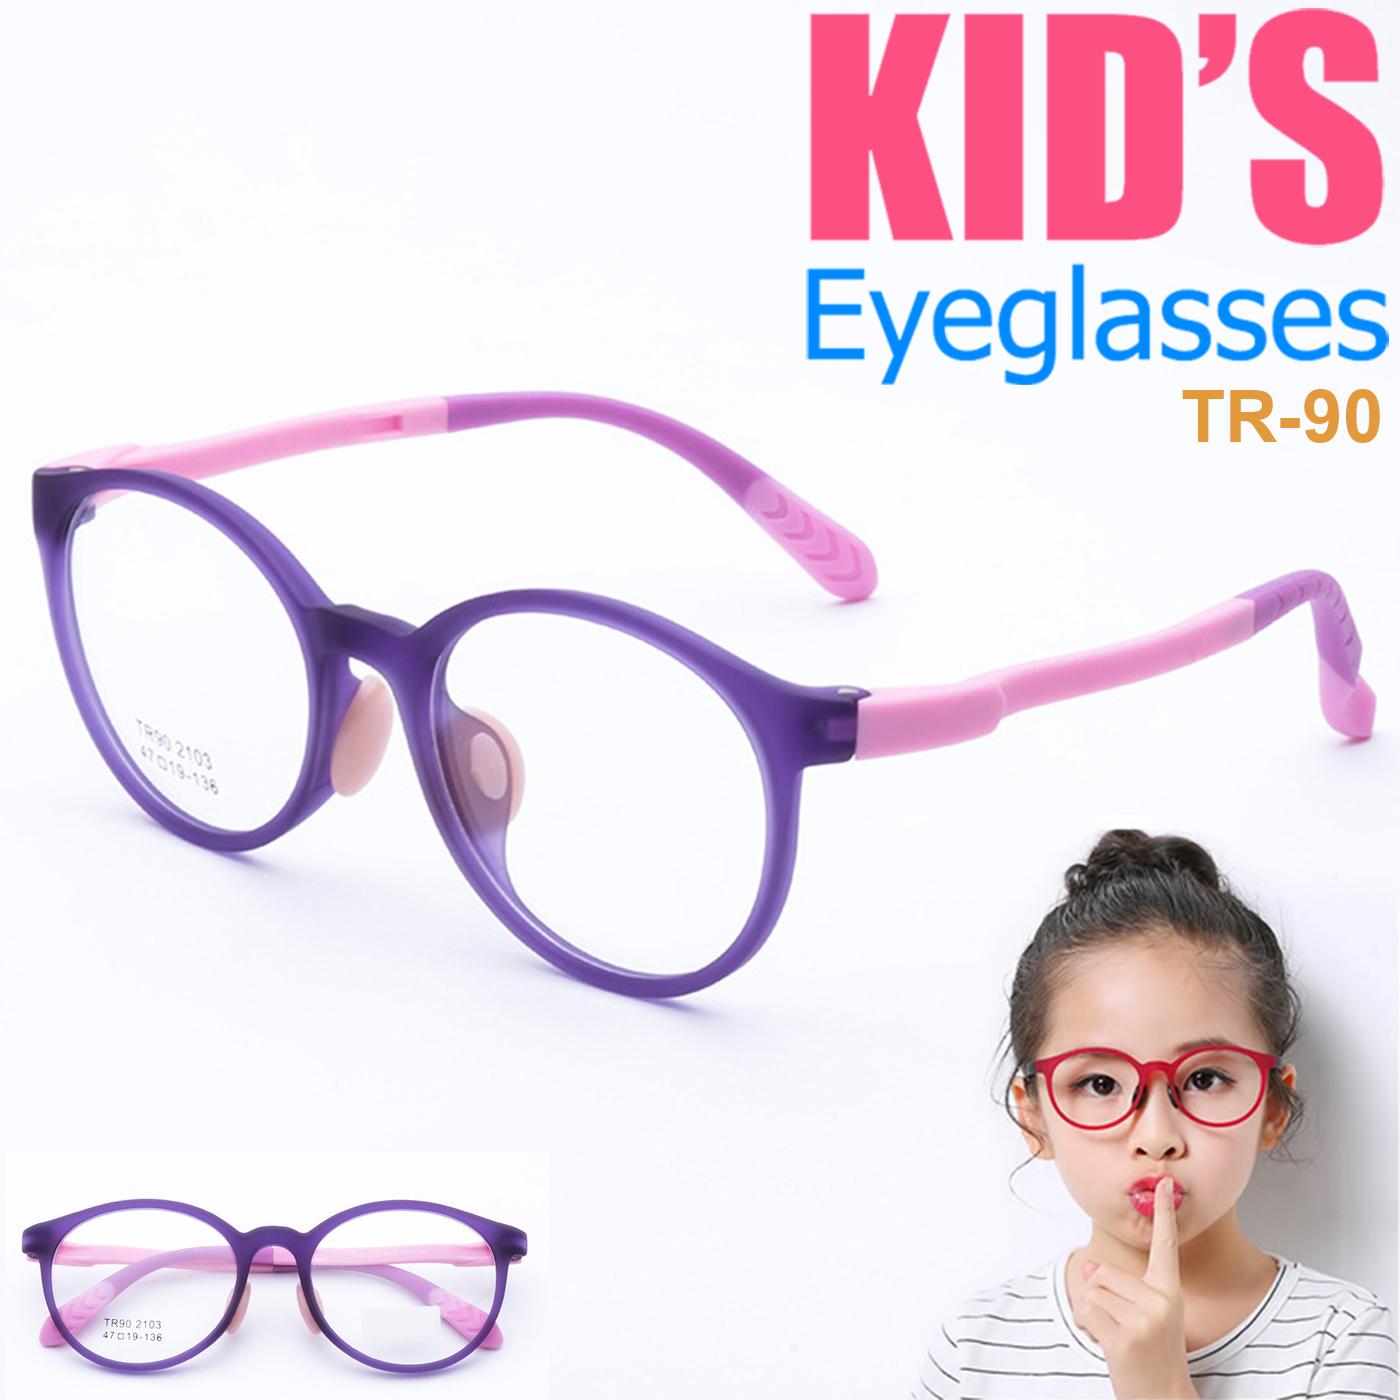 แว่นตาเกาหลีเด็ก Fashion Korea Children แว่นตาเด็ก รุ่น 2103 C-2 สีม่วง กรอบแว่นตาเด็ก Round ทรงกลม Eyeglass baby frame ( สำหรับตัดเลนส์ ) วัสดุ TR-90 เบาและยืดหยุนได้สูง ขาข้อต่อ Kid eyewear Glasses